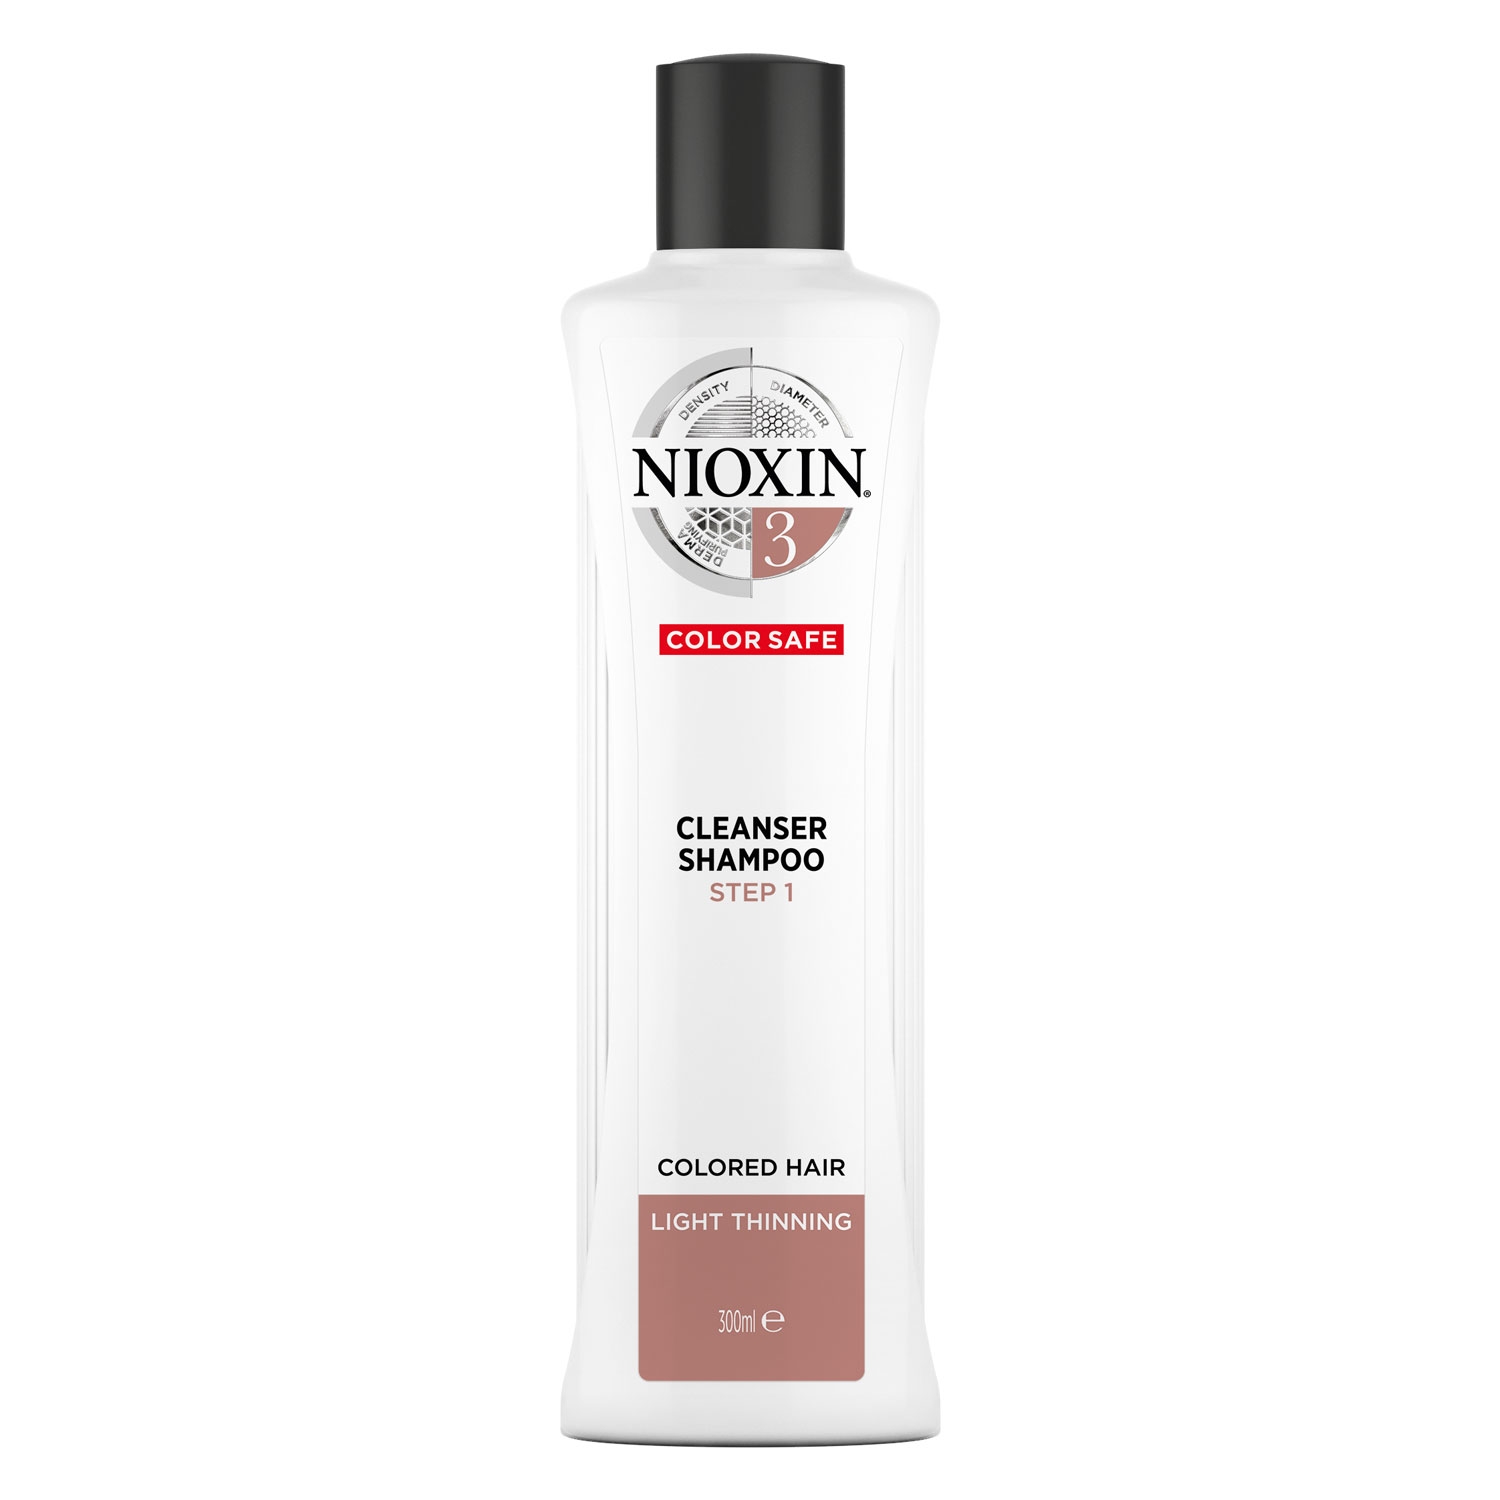 Produktbild von Nioxin - Cleanser Shampoo 3